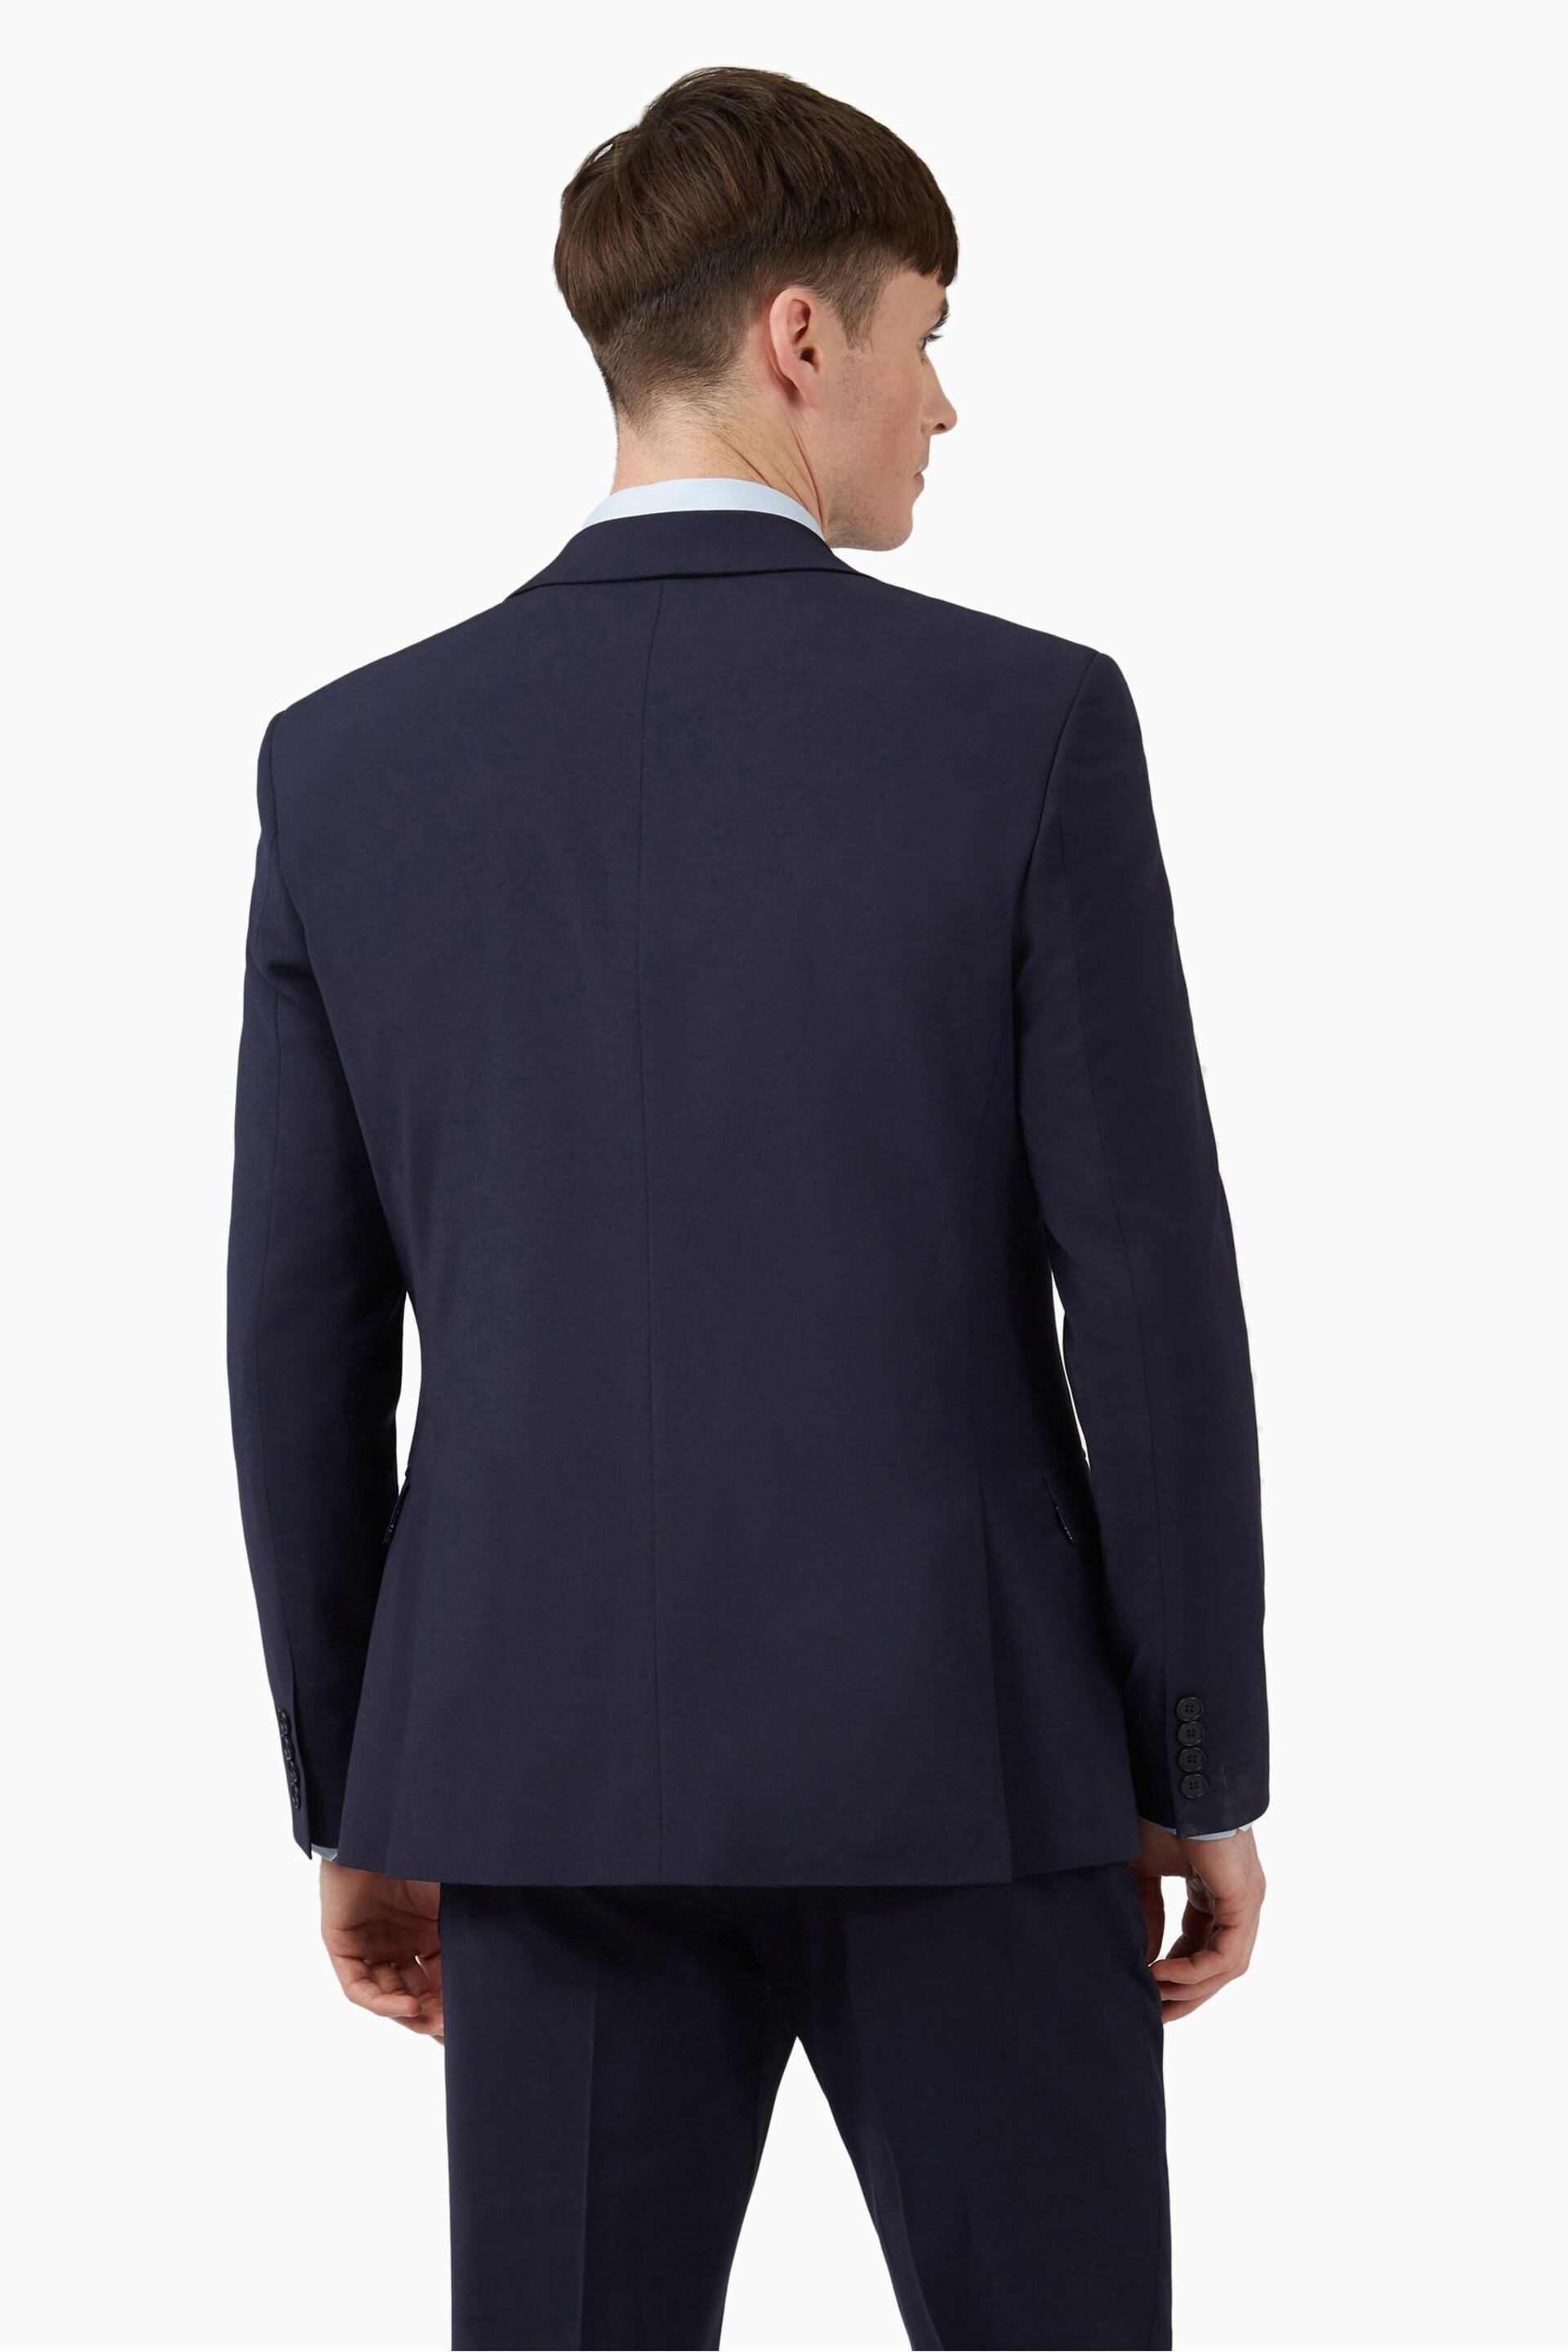 Ted Baker Premium Navy Blue Wool Panama Slim Suit: Jacket - Image 6 of 7